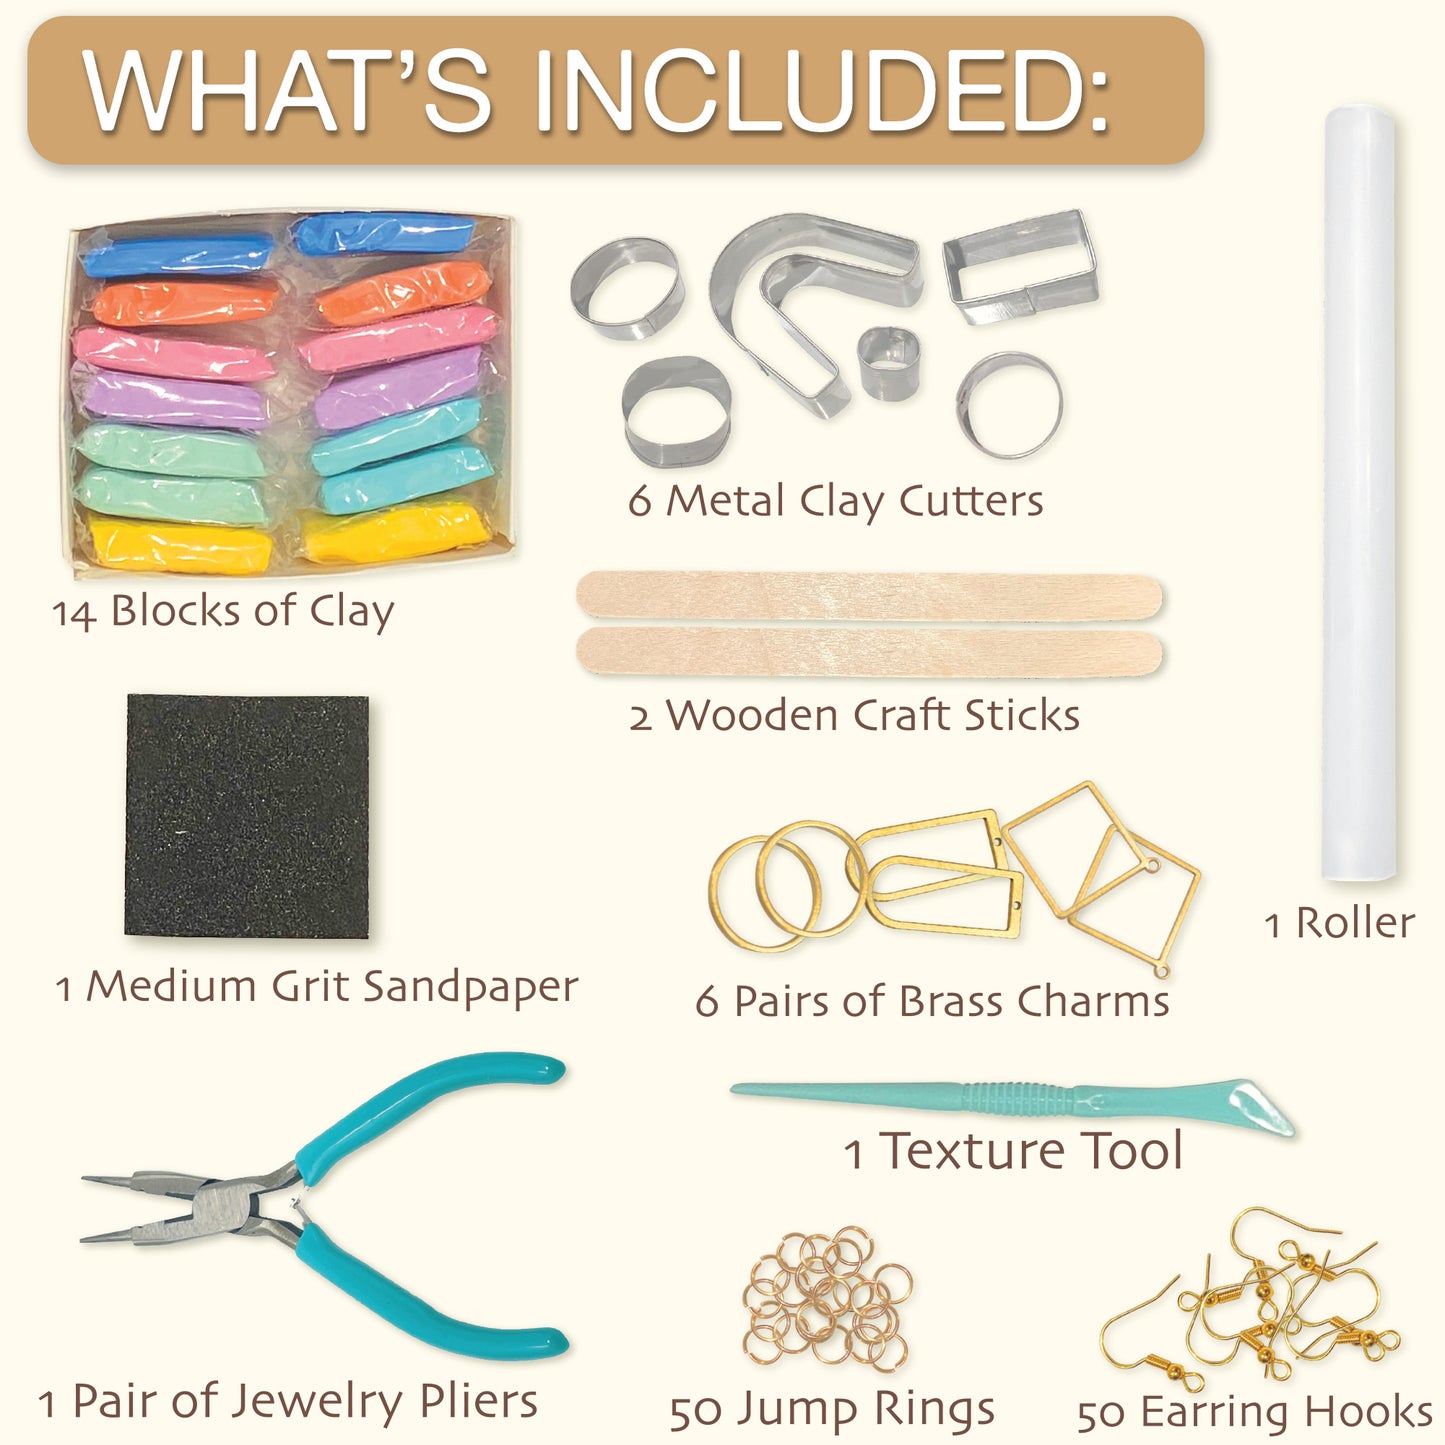 DIY Clay Earrings - Craft Kit